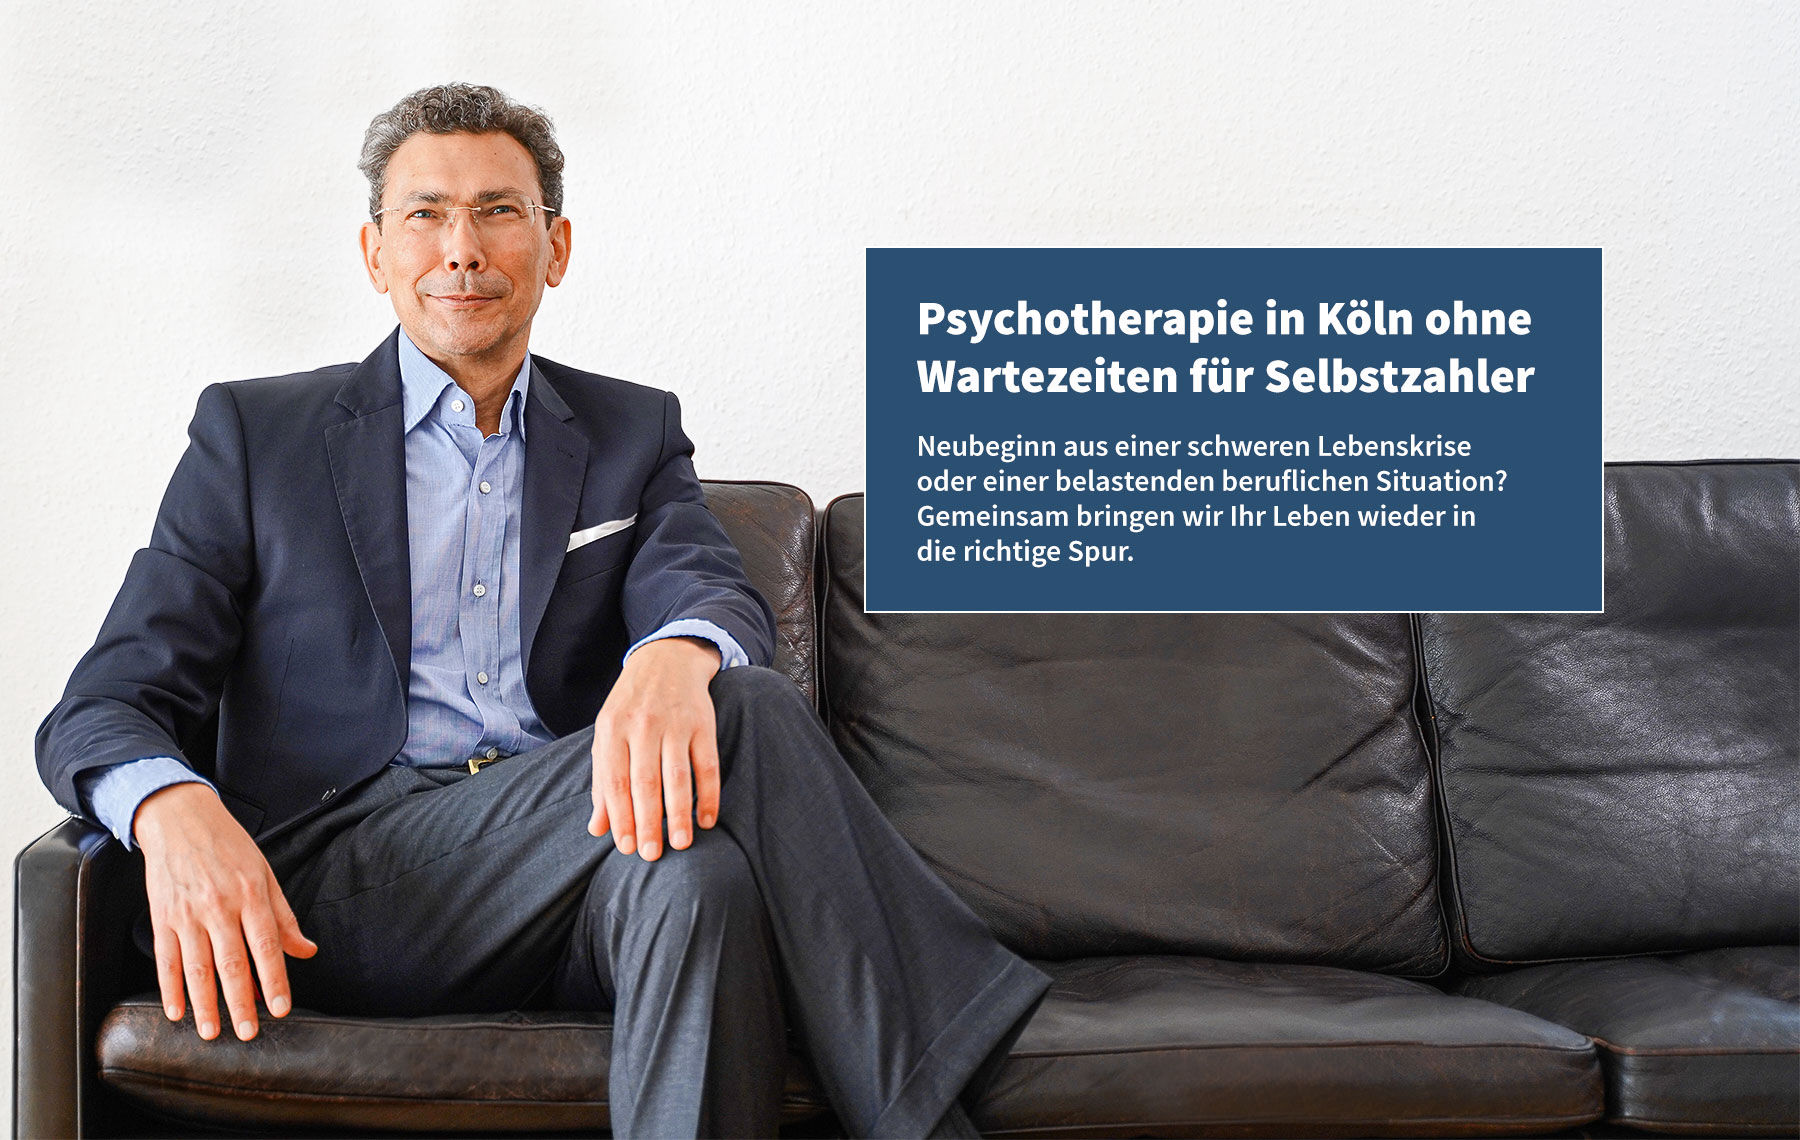 Psychotherapie in Köln ohne Wartezeiten für Selbstzahler.